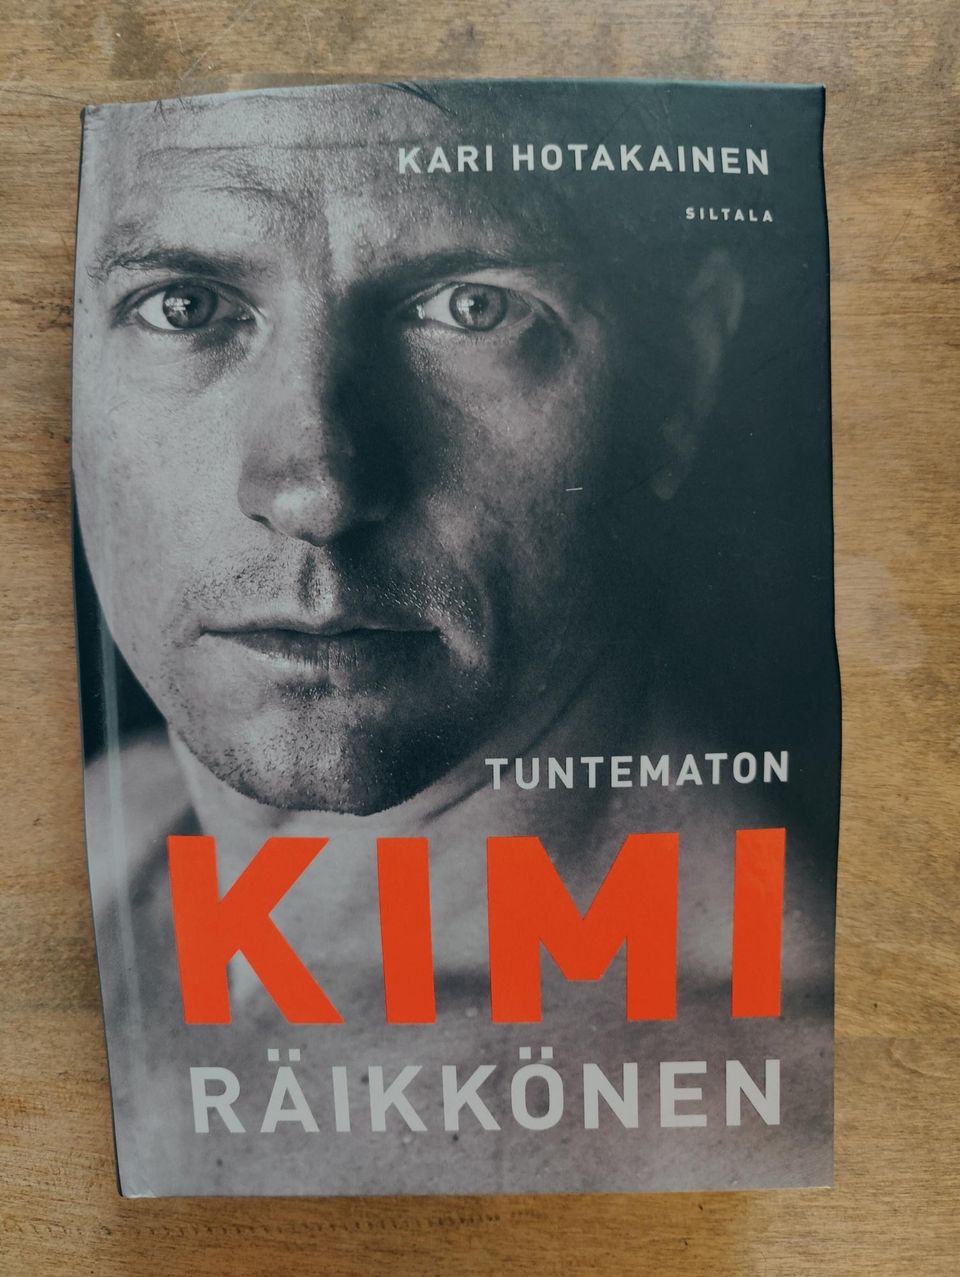 Tuntematon Kimi Räikkönen